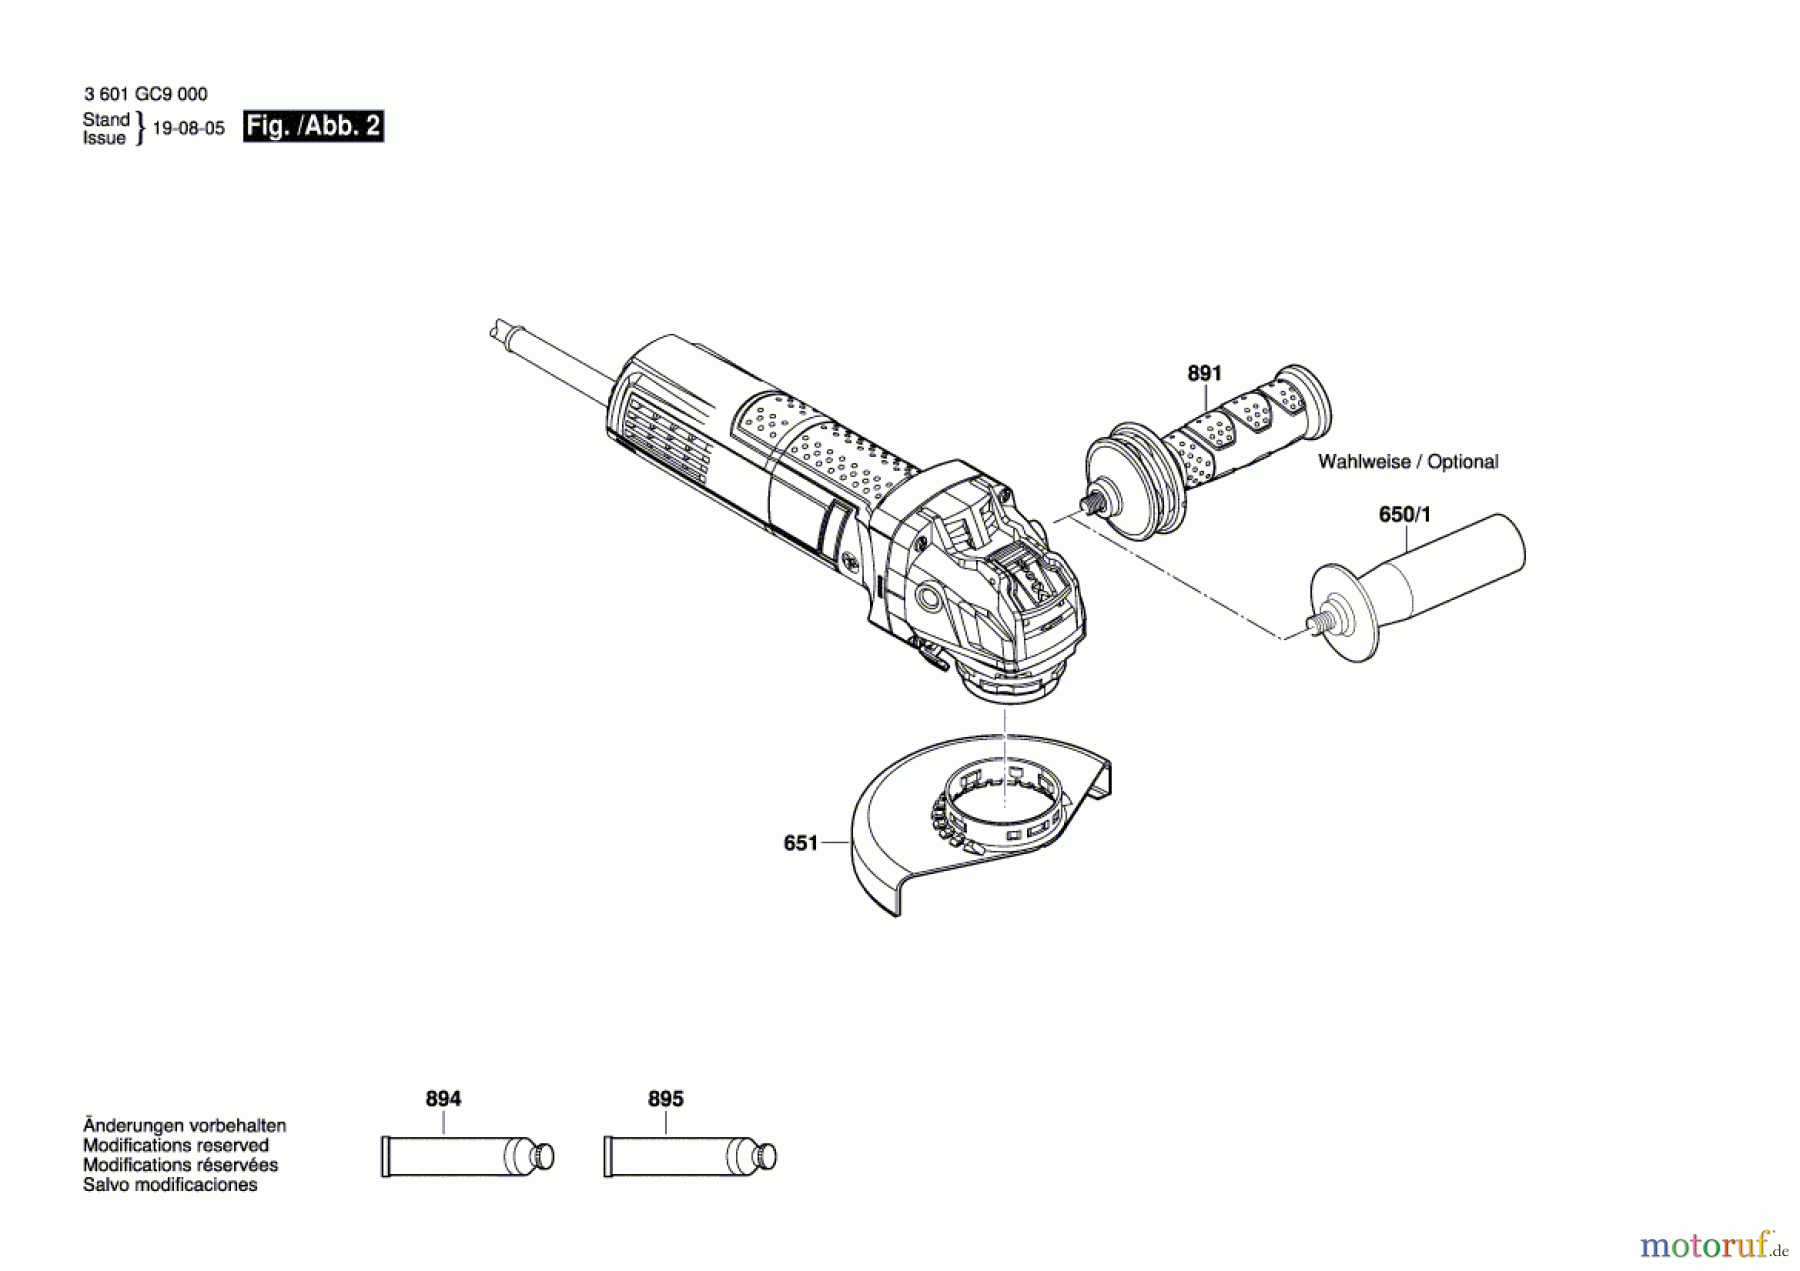  Bosch Werkzeug Winkelschleifer GWX 750-115 Seite 2